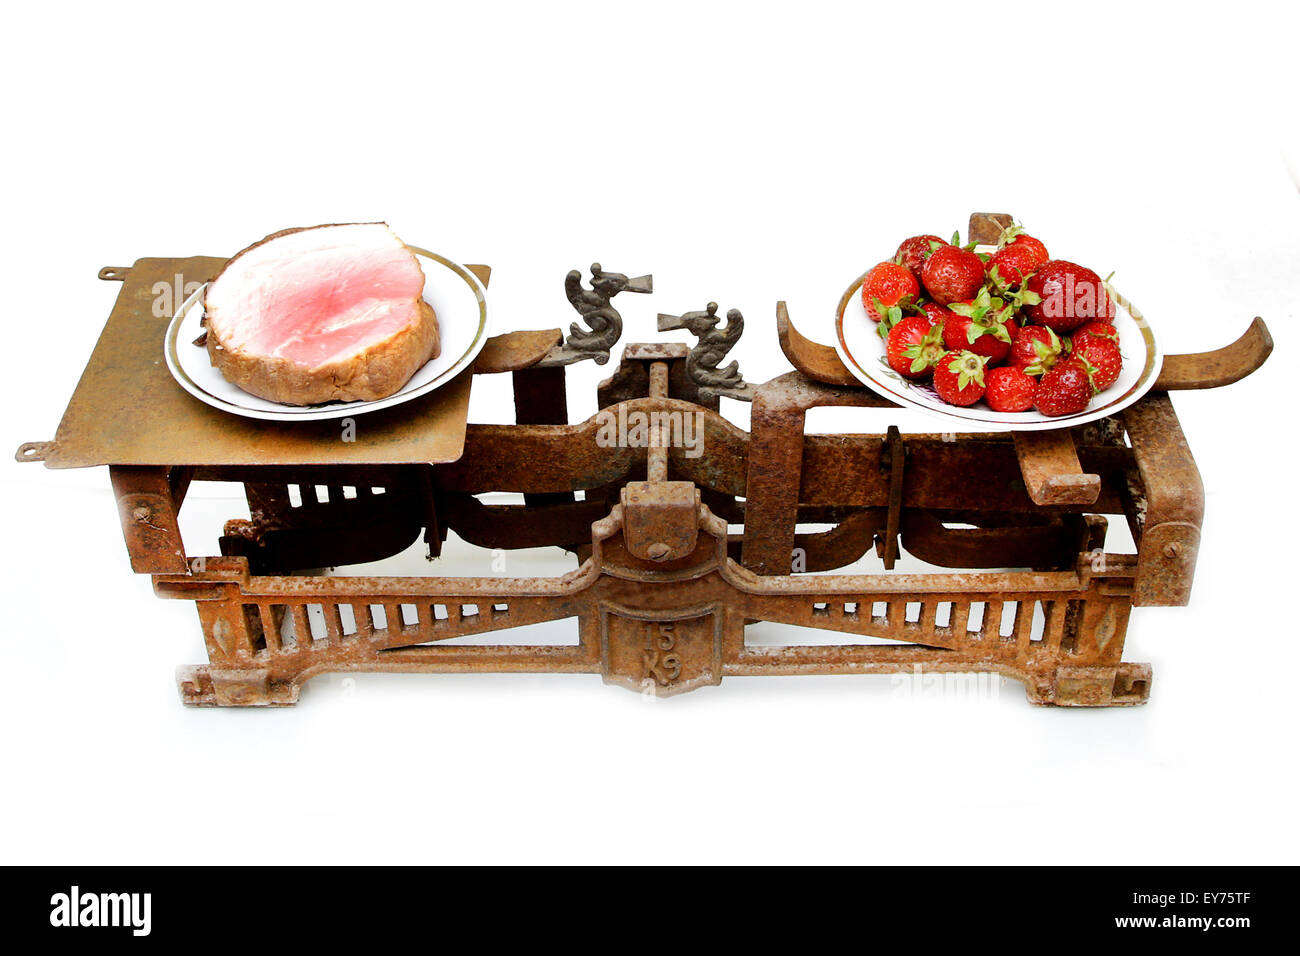 Les fraises et de gras jambon sur différentes échelles de tasses vintage montrant des aliments sains avant important que le porc Banque D'Images